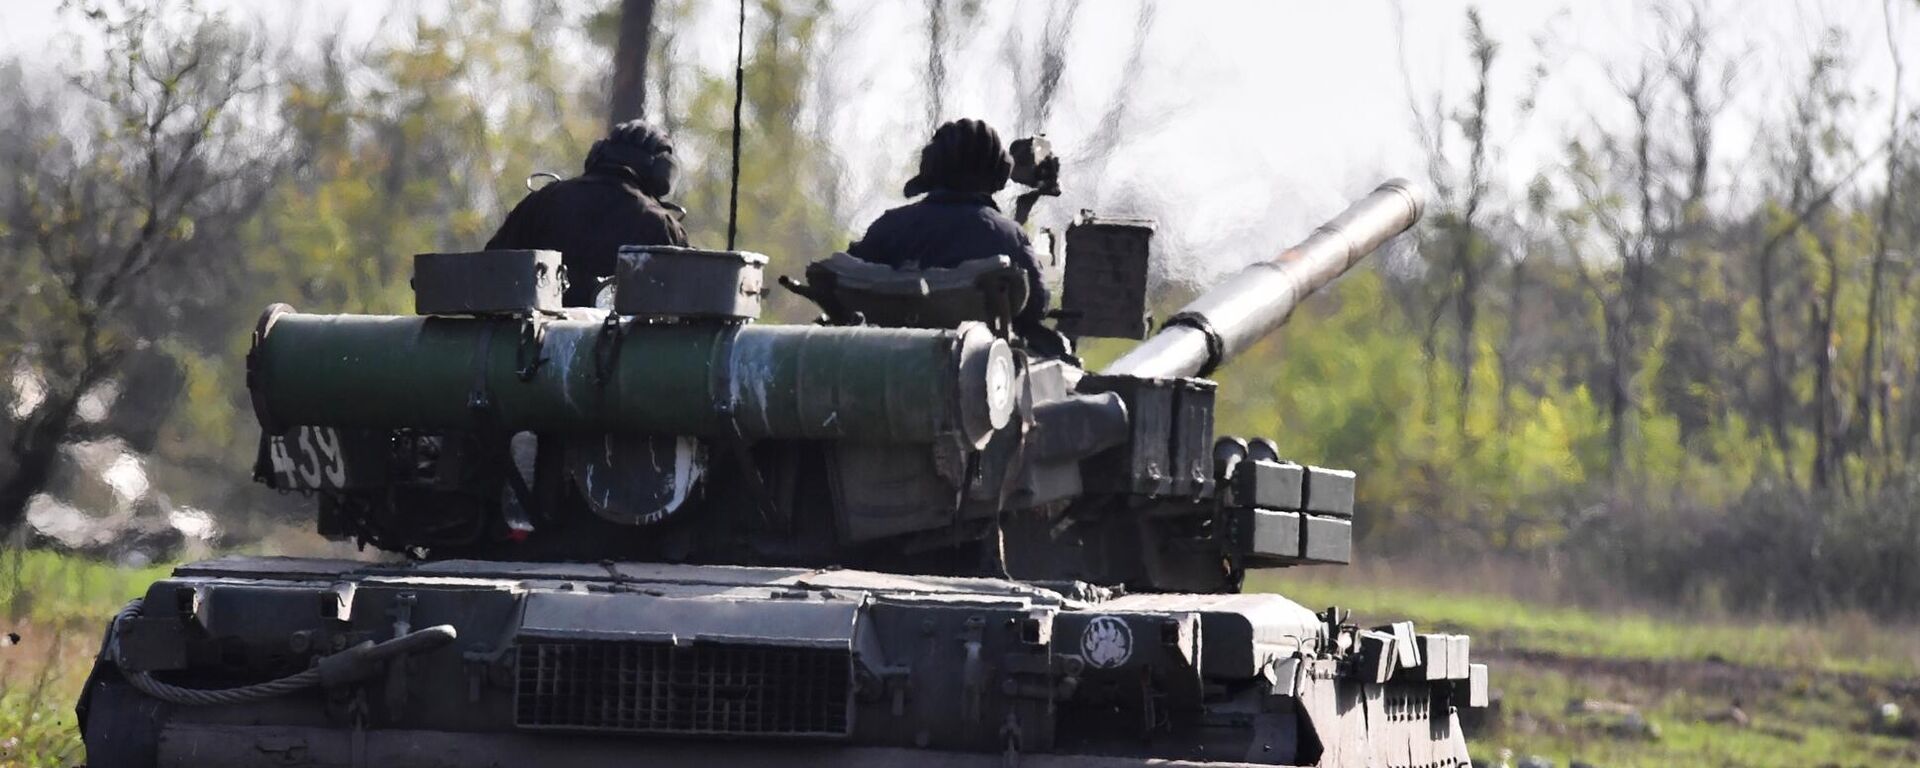 يتم إرسال دبابة تي-80 لإطلاق النار الحي في مواقع القوات المسلحة لأوكرانيا في منطقة دونيتسك - سبوتنيك عربي, 1920, 06.01.2023